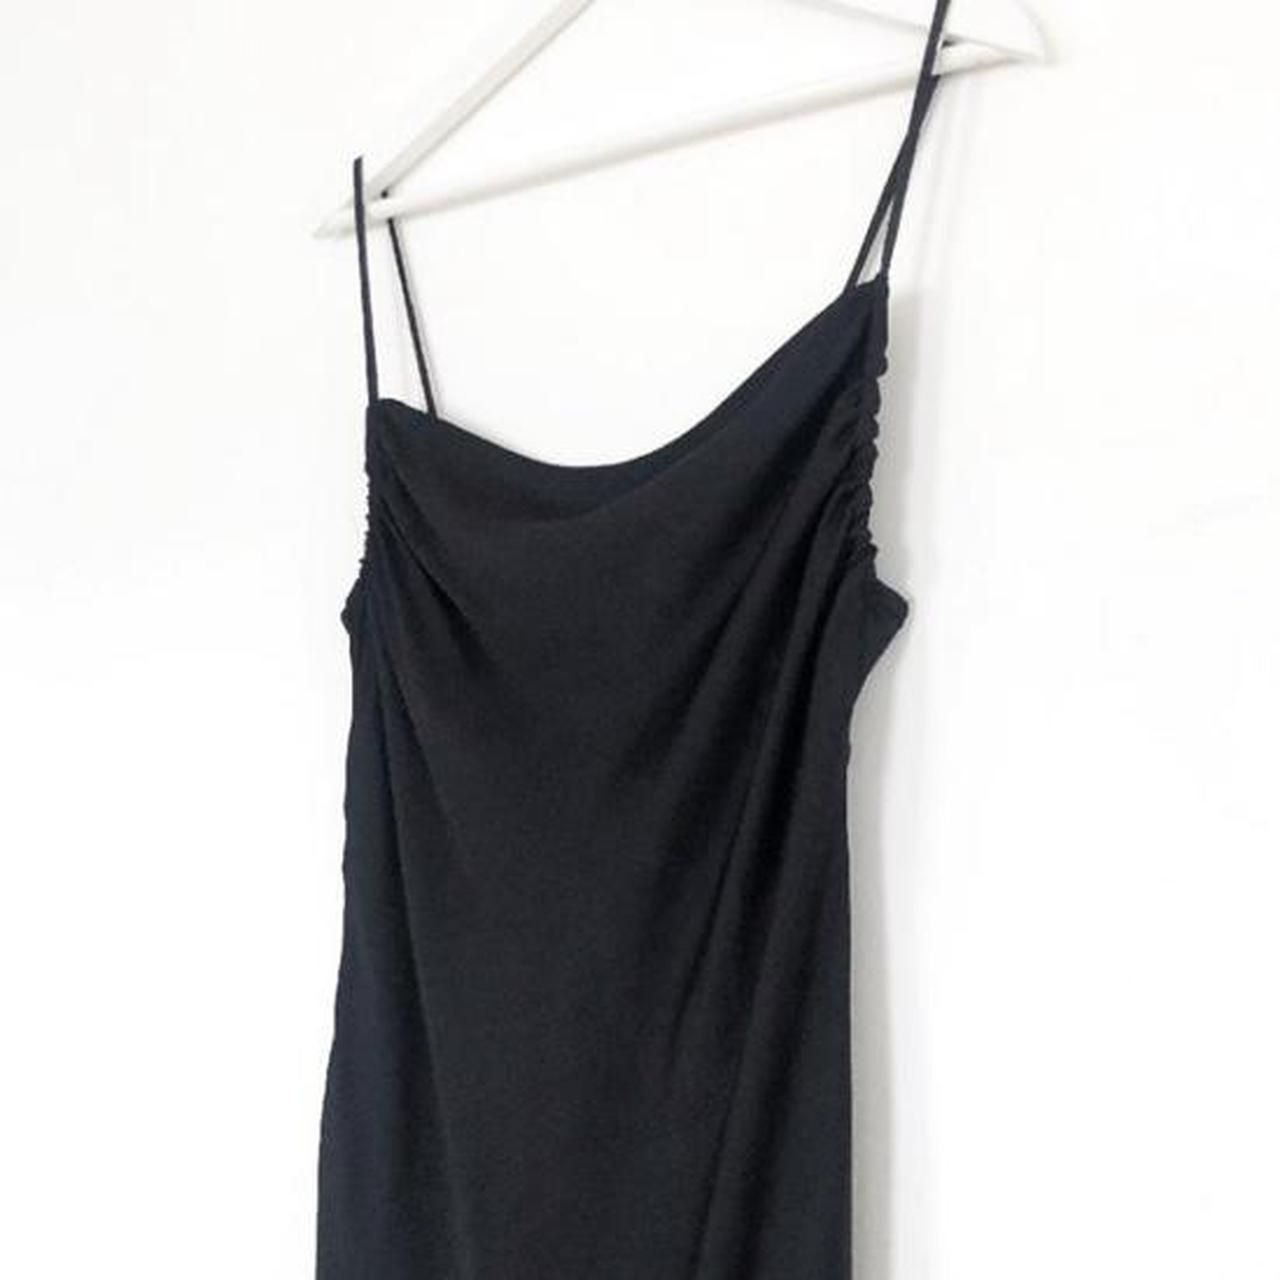 Zara black satin slip dress with cowl neck, low... - Depop